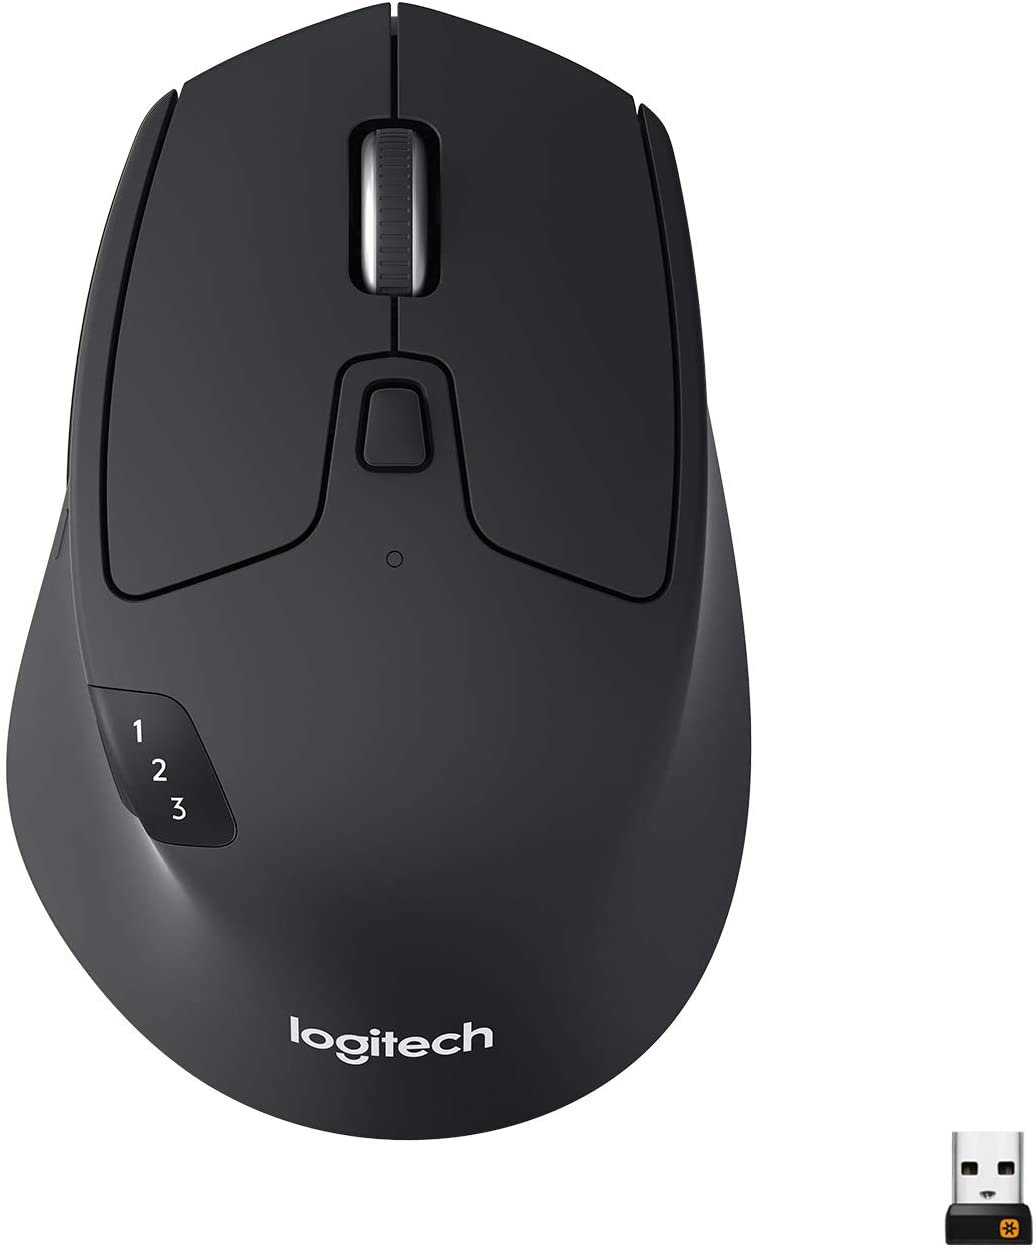 Logitech M720 Triathlon Mouse - Black